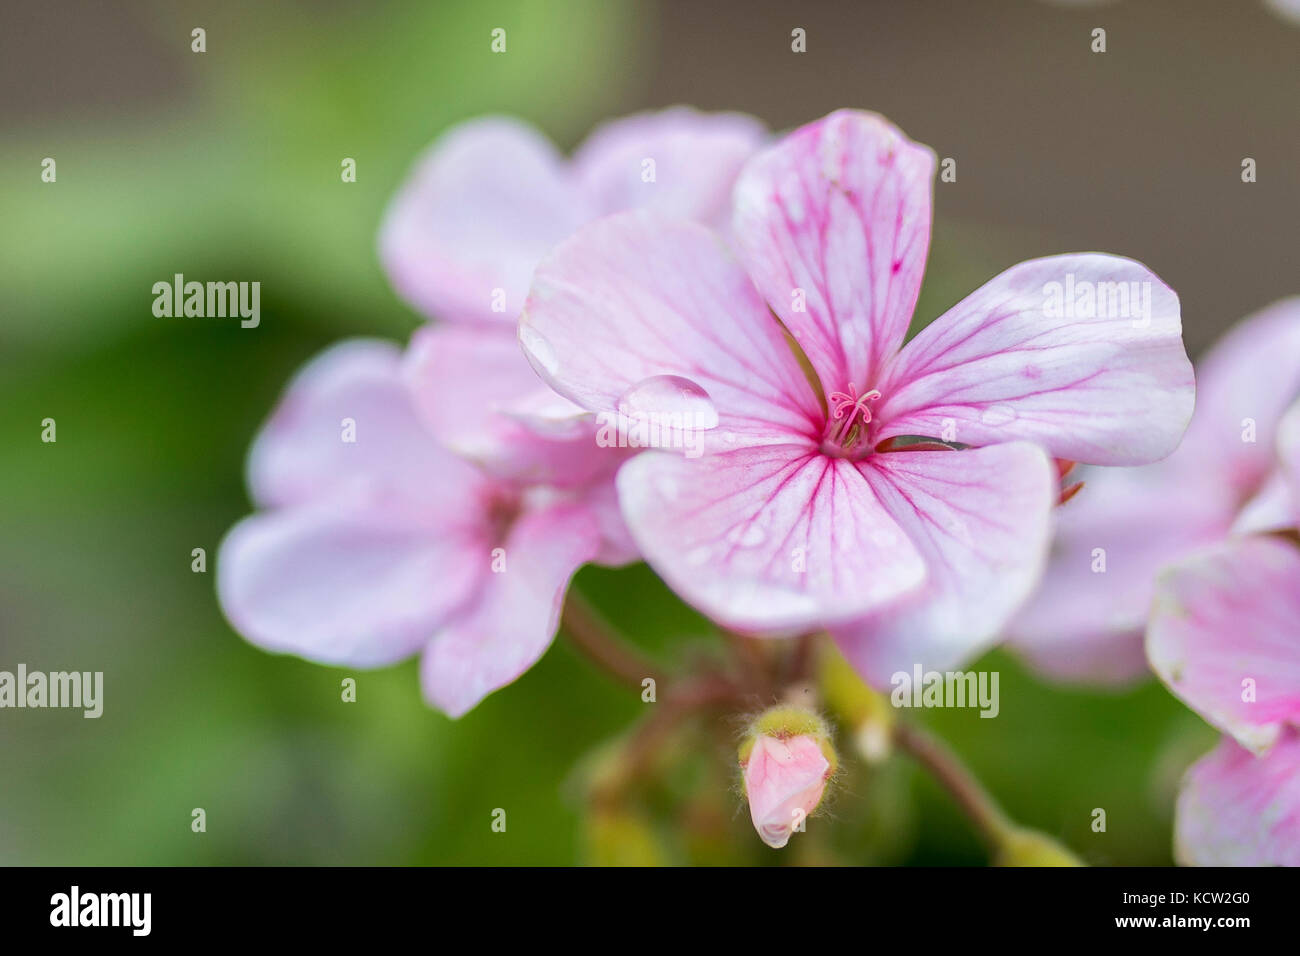 Pink flower of Geranium, Pelargonium x hortorum L.H.Bail (Geraniaceae) Stock Photo